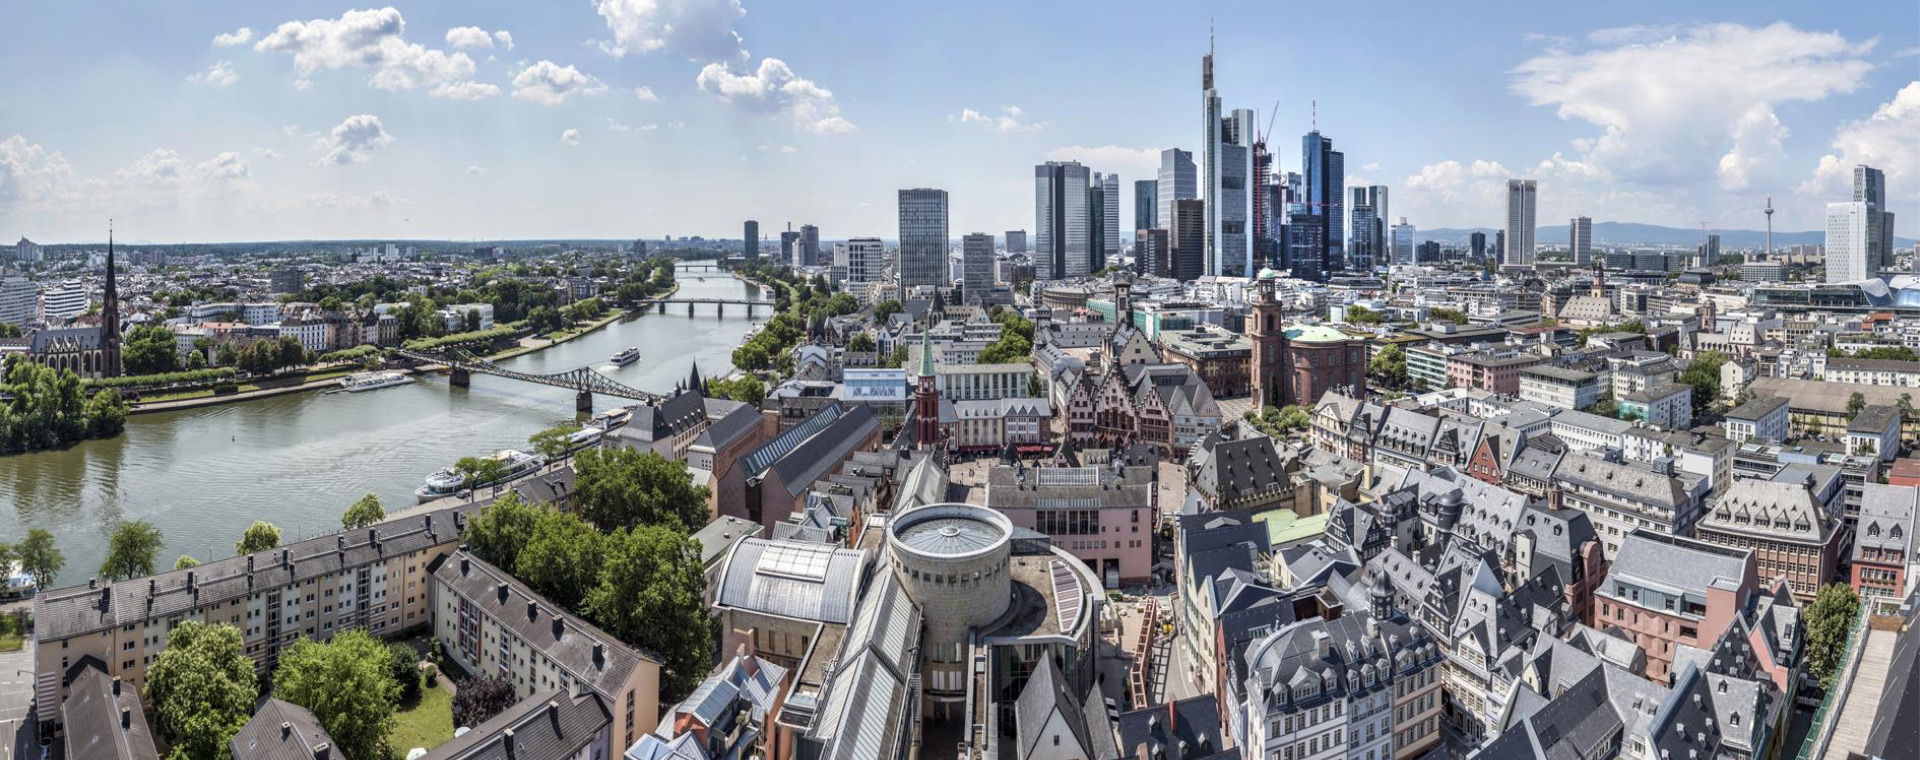 Agrandar imagen: Blick auf die Skyline Frankfurts und den Main links